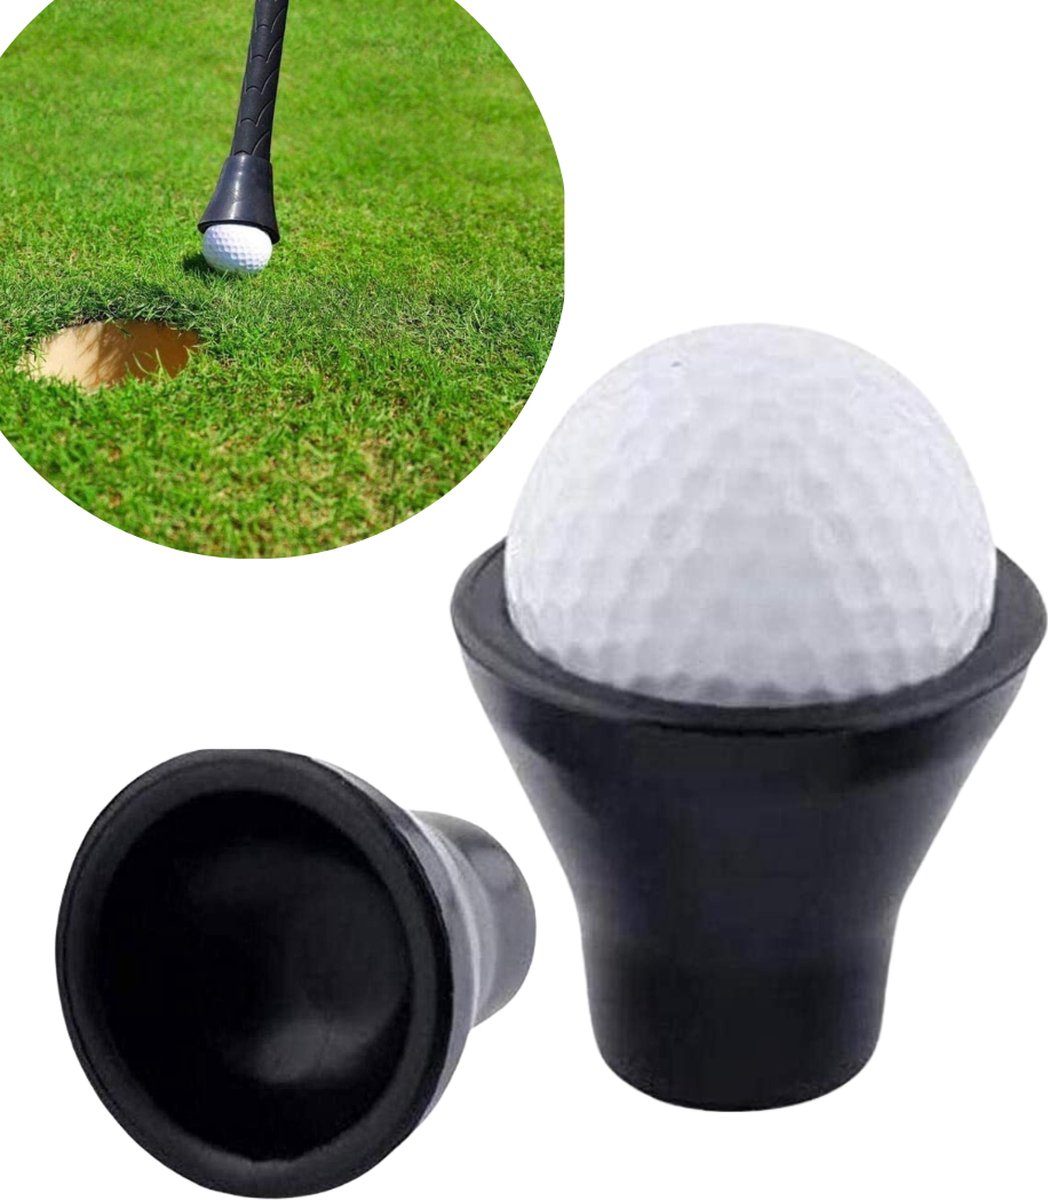 Golfbal pick up - Click on - Golfbal pakker Putter - Zonder schroeven - Voor de Putter - Golfbal hengel - Ball retriever - Golfaccesoires - Golfbal oppak systeem - Zonder te bukken - Golfbal zuignap - Merkloos